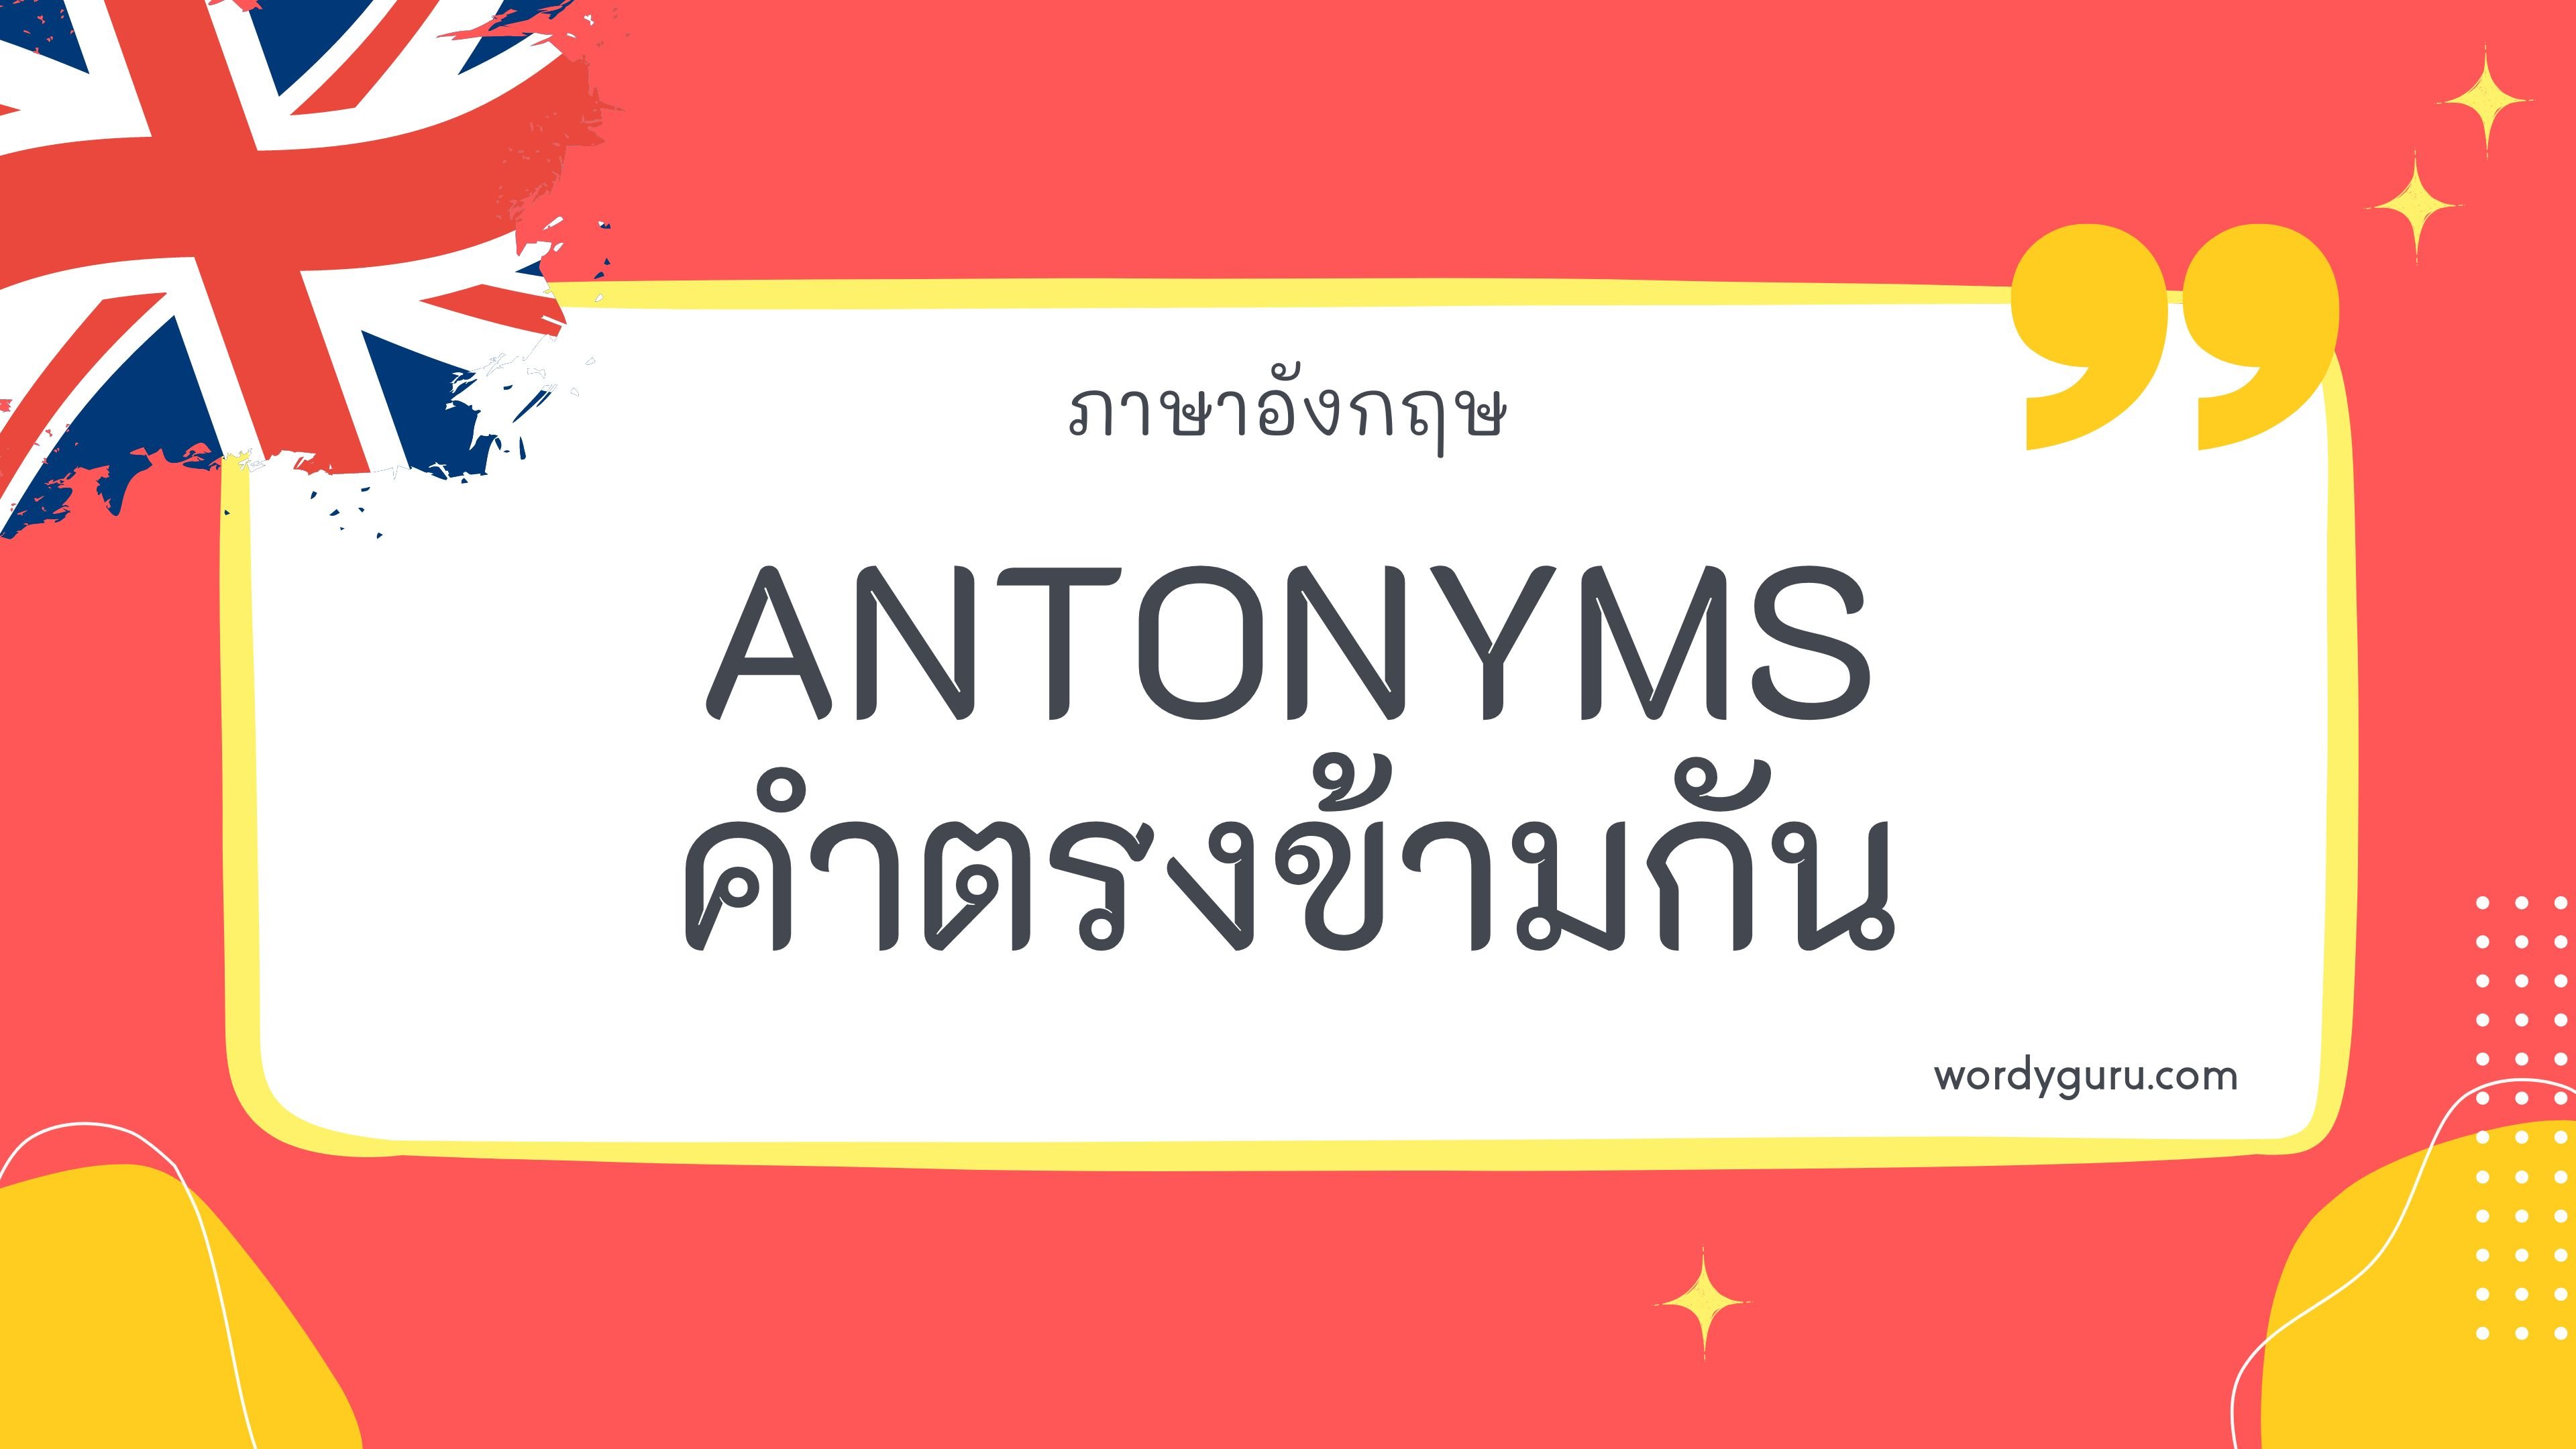 Antonyms คือ คำที่มีความหมายตรงข้ามกัน หรือเรียกว่า Opposite คำตรงข้าม ไม่ว่าตัวสะกดหรือการออกเสียงจะเหมือนหรือต่างกันก็ตาม เช่น Go (ไป) ตรงข้ามกับ Come (มา)